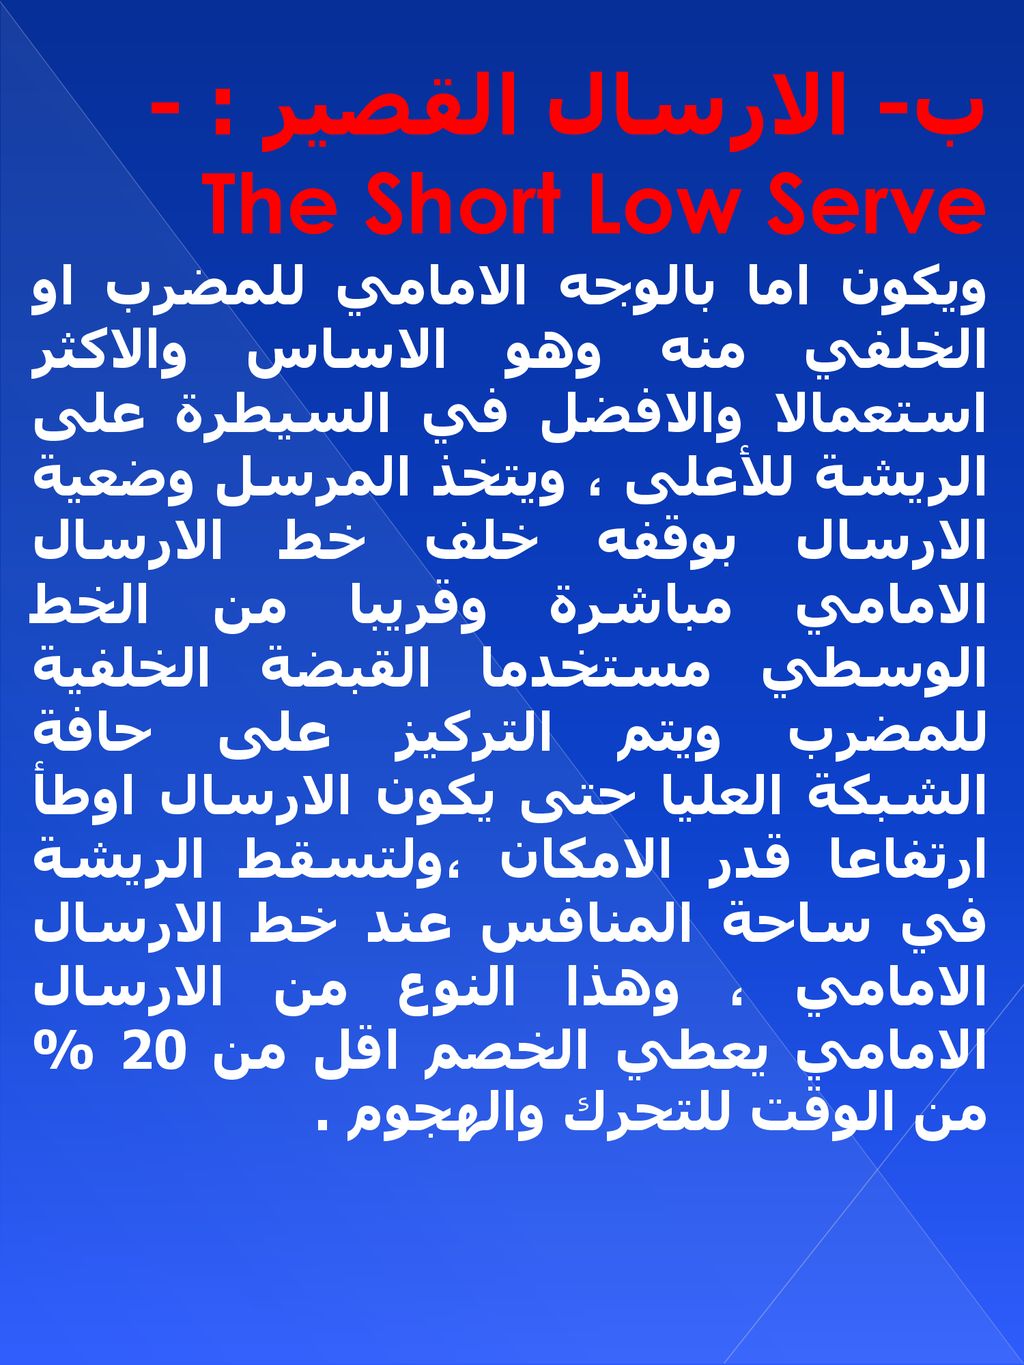 ب- الارسال القصير : - The Short Low Serve